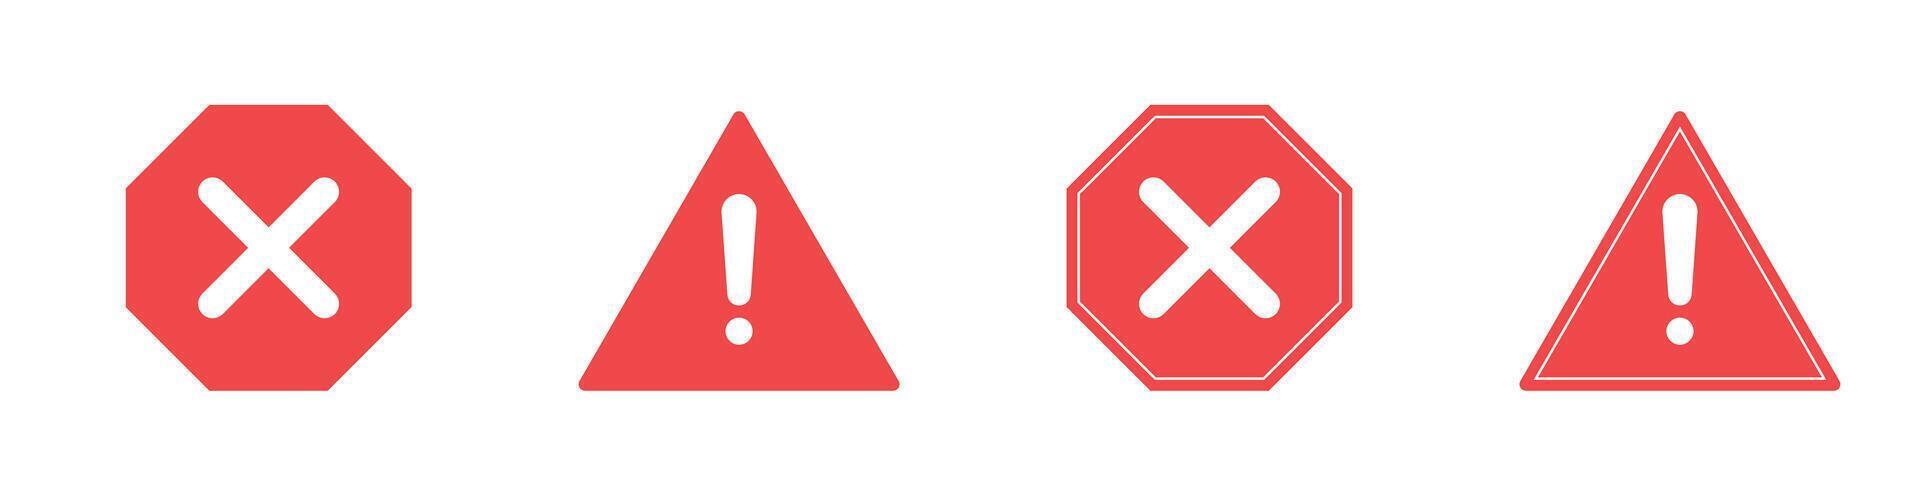 prohibido símbolo icono rojo advertencia firmar la carretera símbolo vector